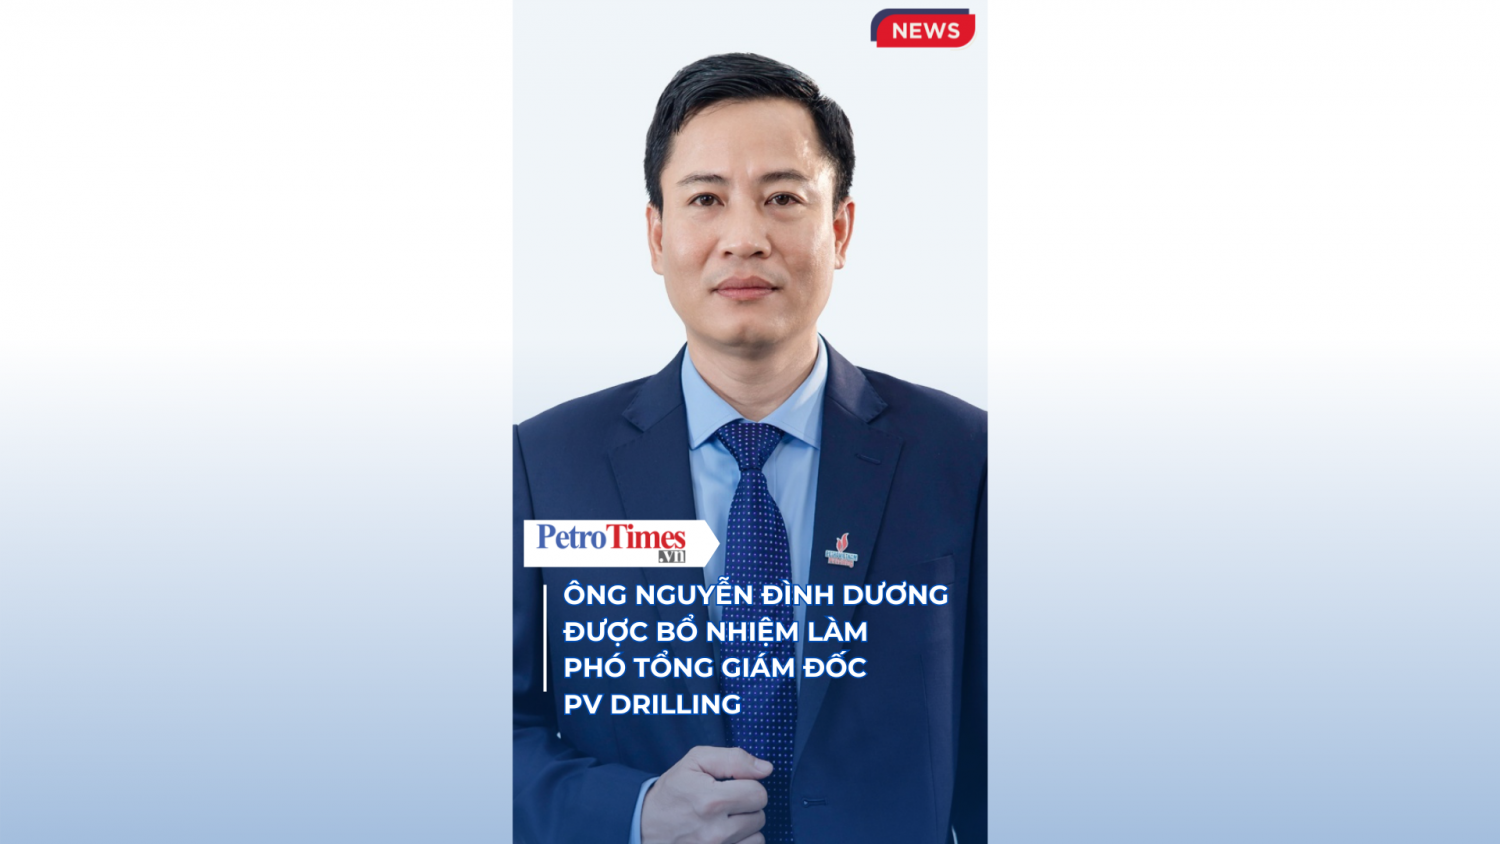 [VIDEO] Ông Nguyễn Đình Dương được bổ nhiệm làm Phó Tổng giám đốc PV Drilling